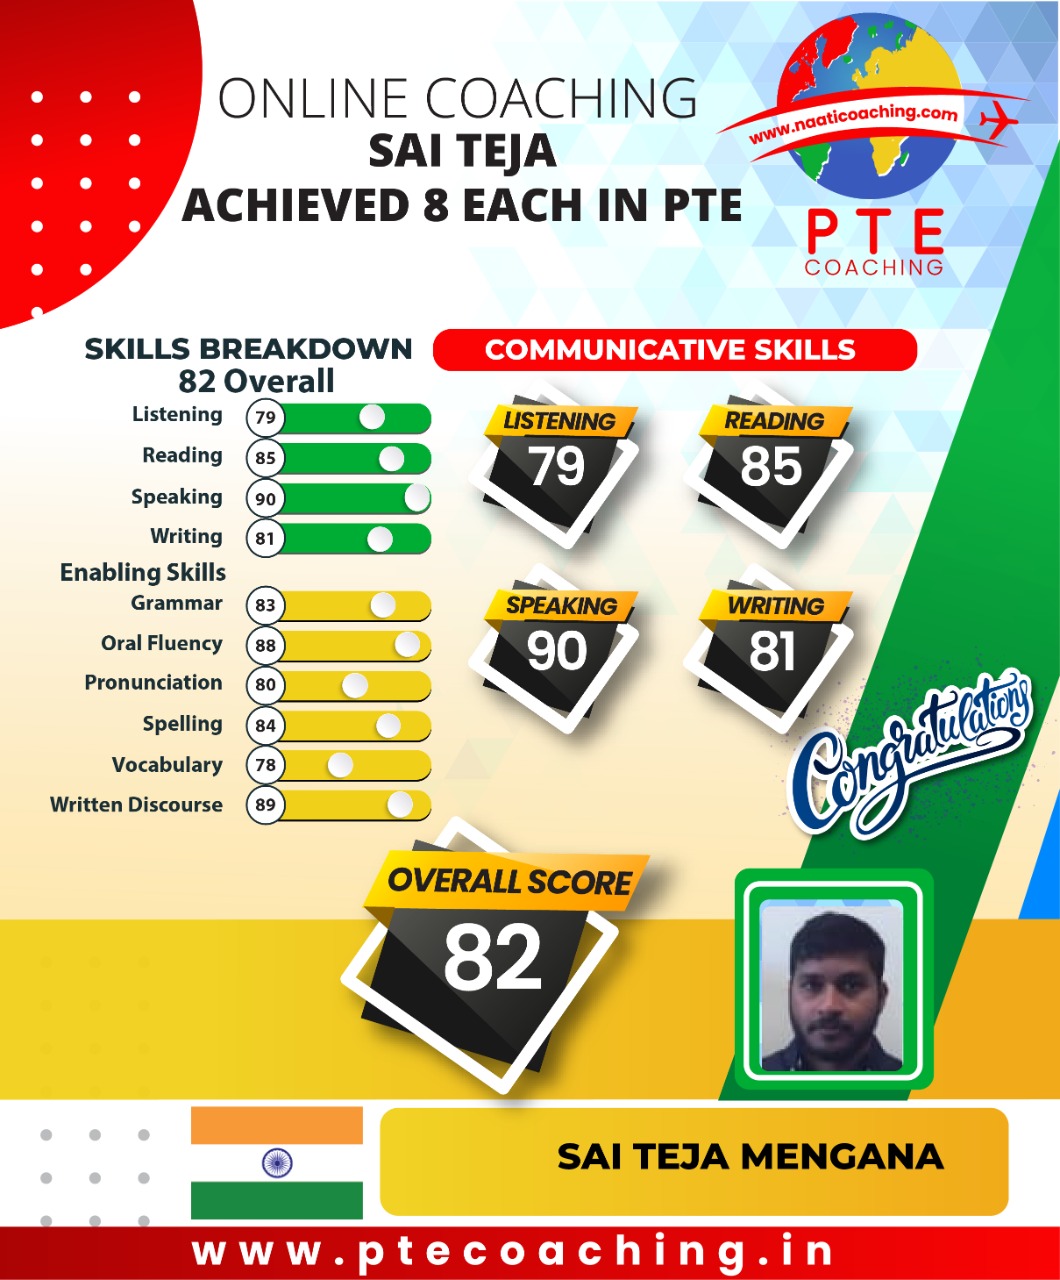 PTE Coaching Scorecard - Sai Teja achieved 8 in each PTE